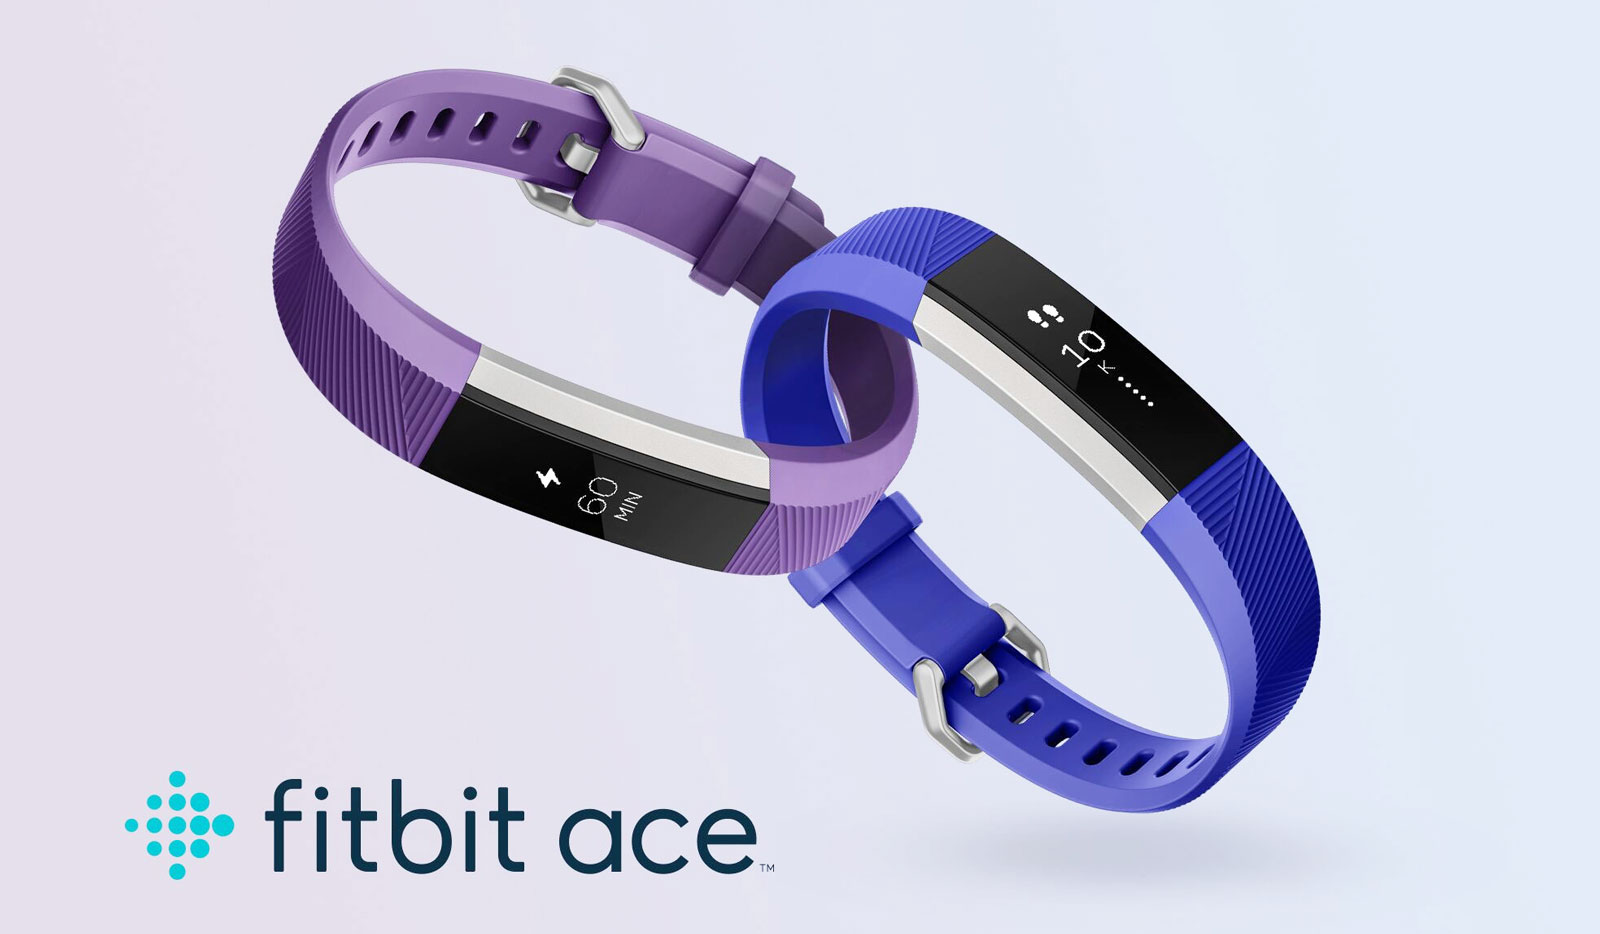 Ace 3 .. أحدث متتبع للياقة البدنية للأطفال من Fitbit